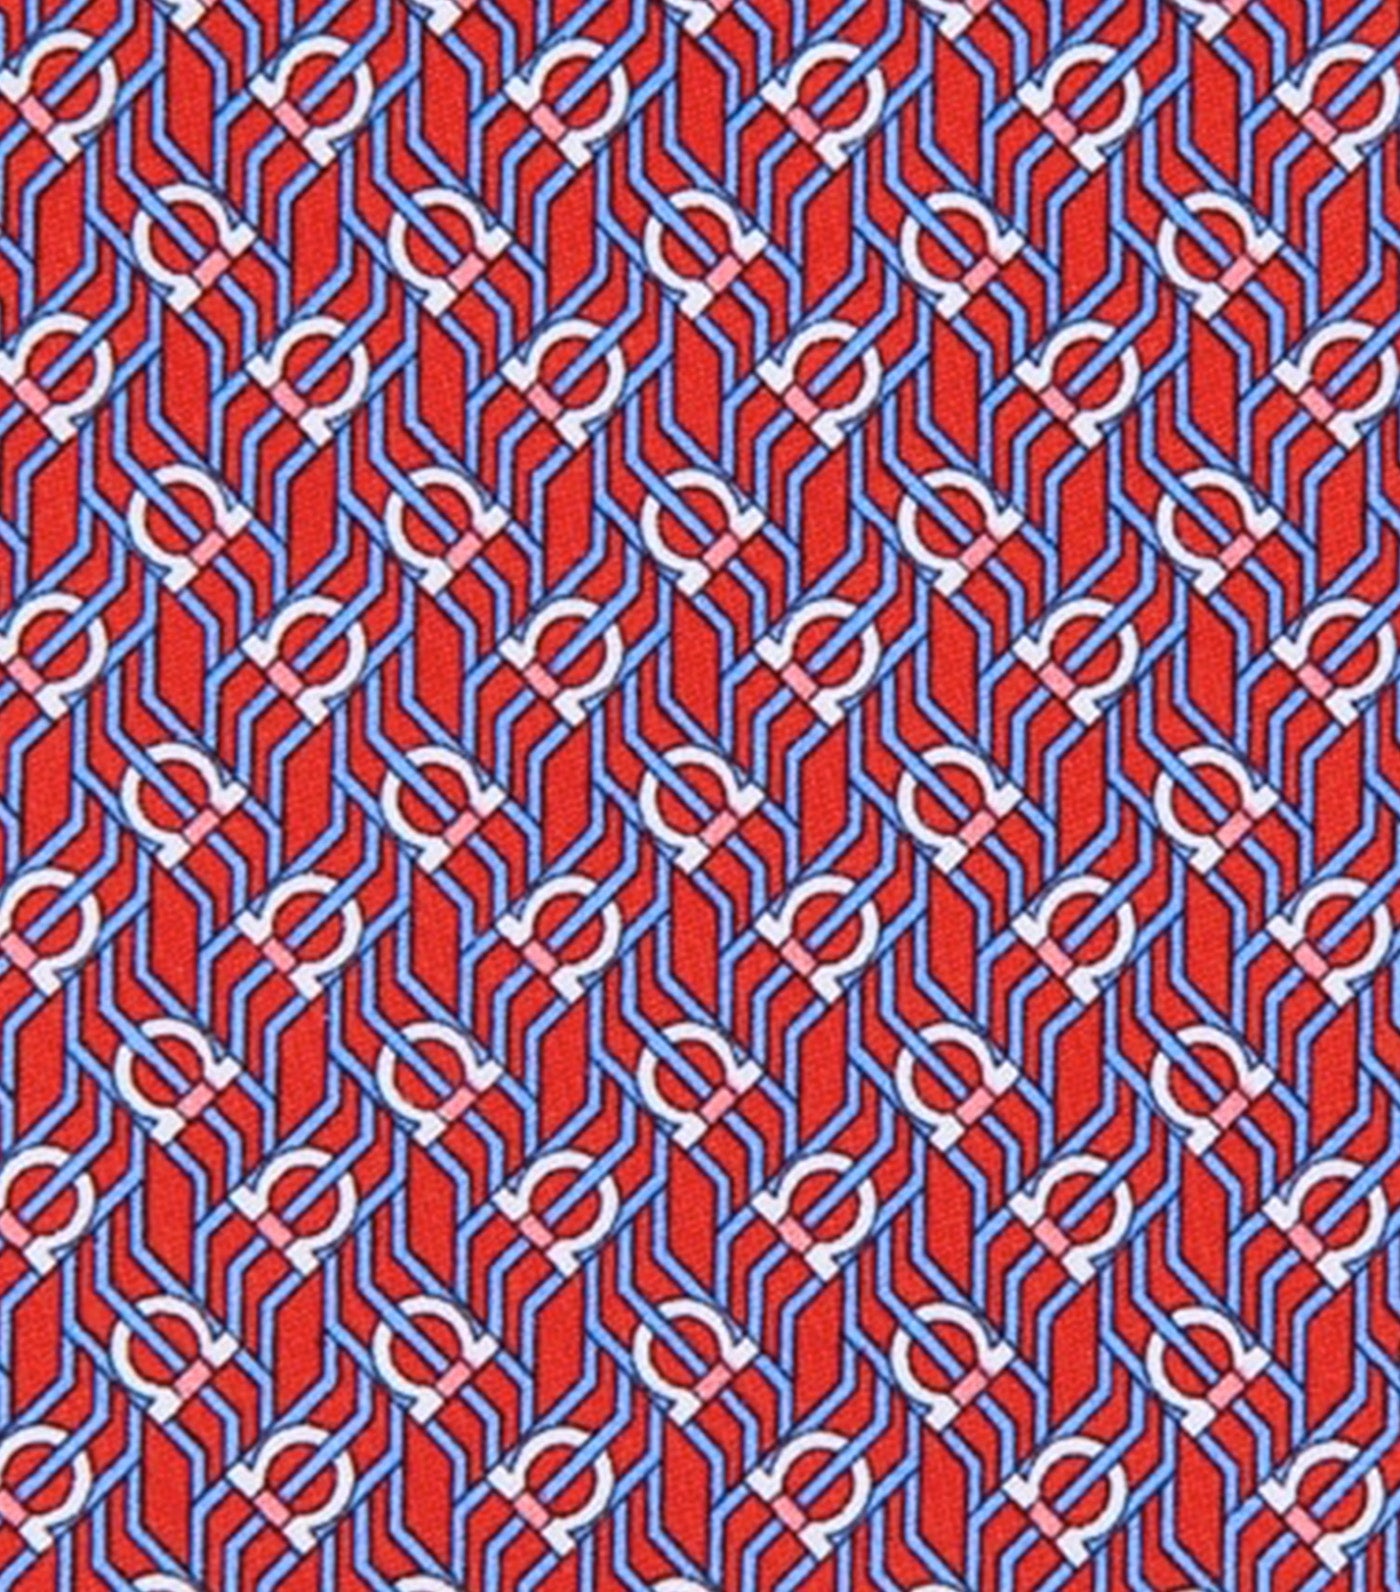 Tetris Print Tie Red